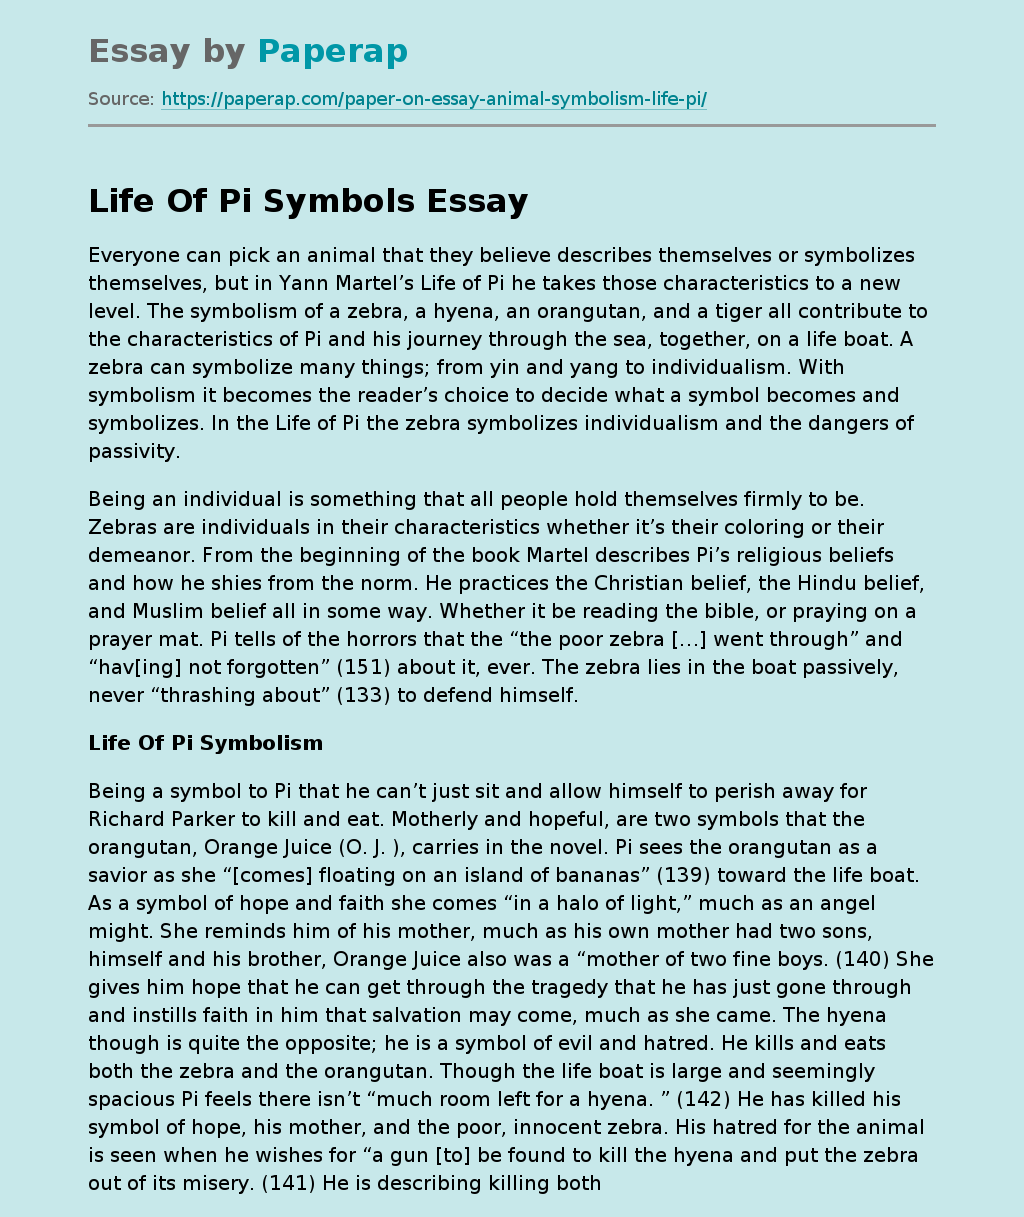 Life Of Pi Symbols